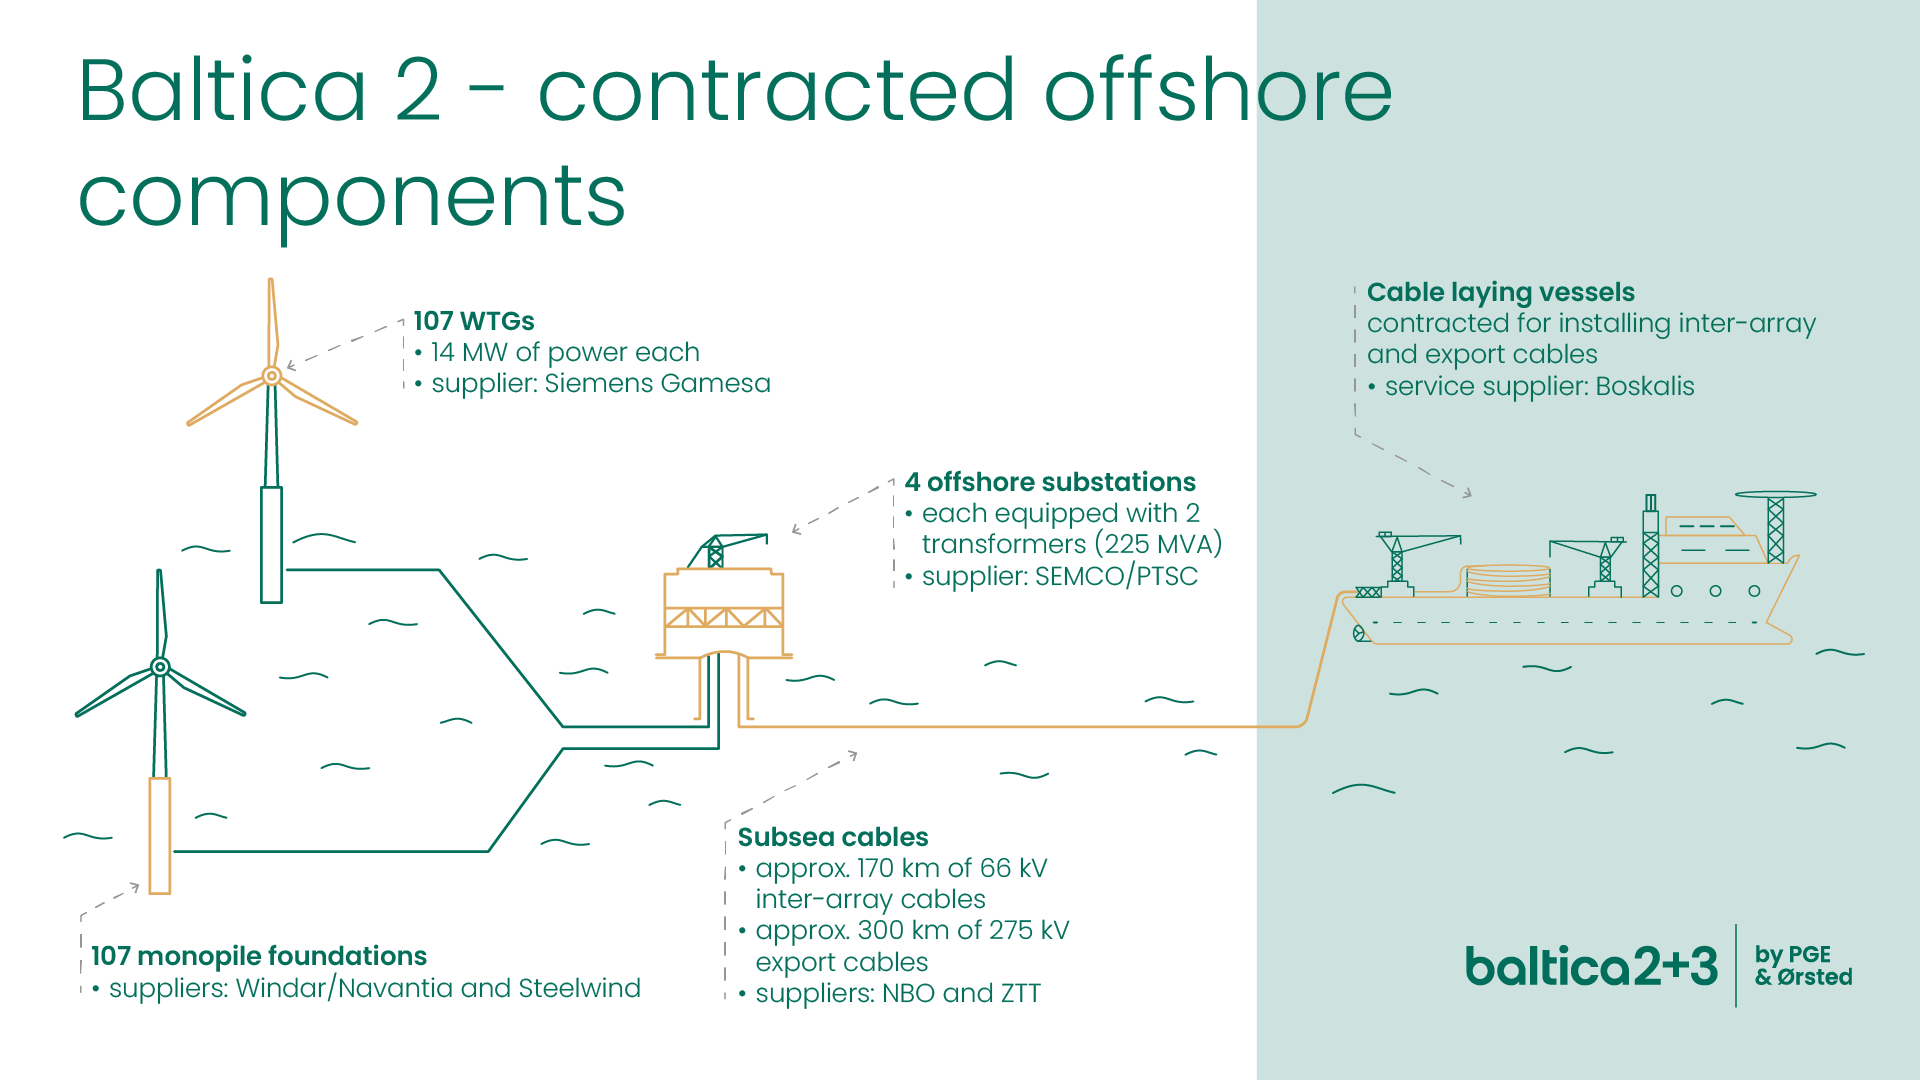 Baltica 2 Offshore Contractors